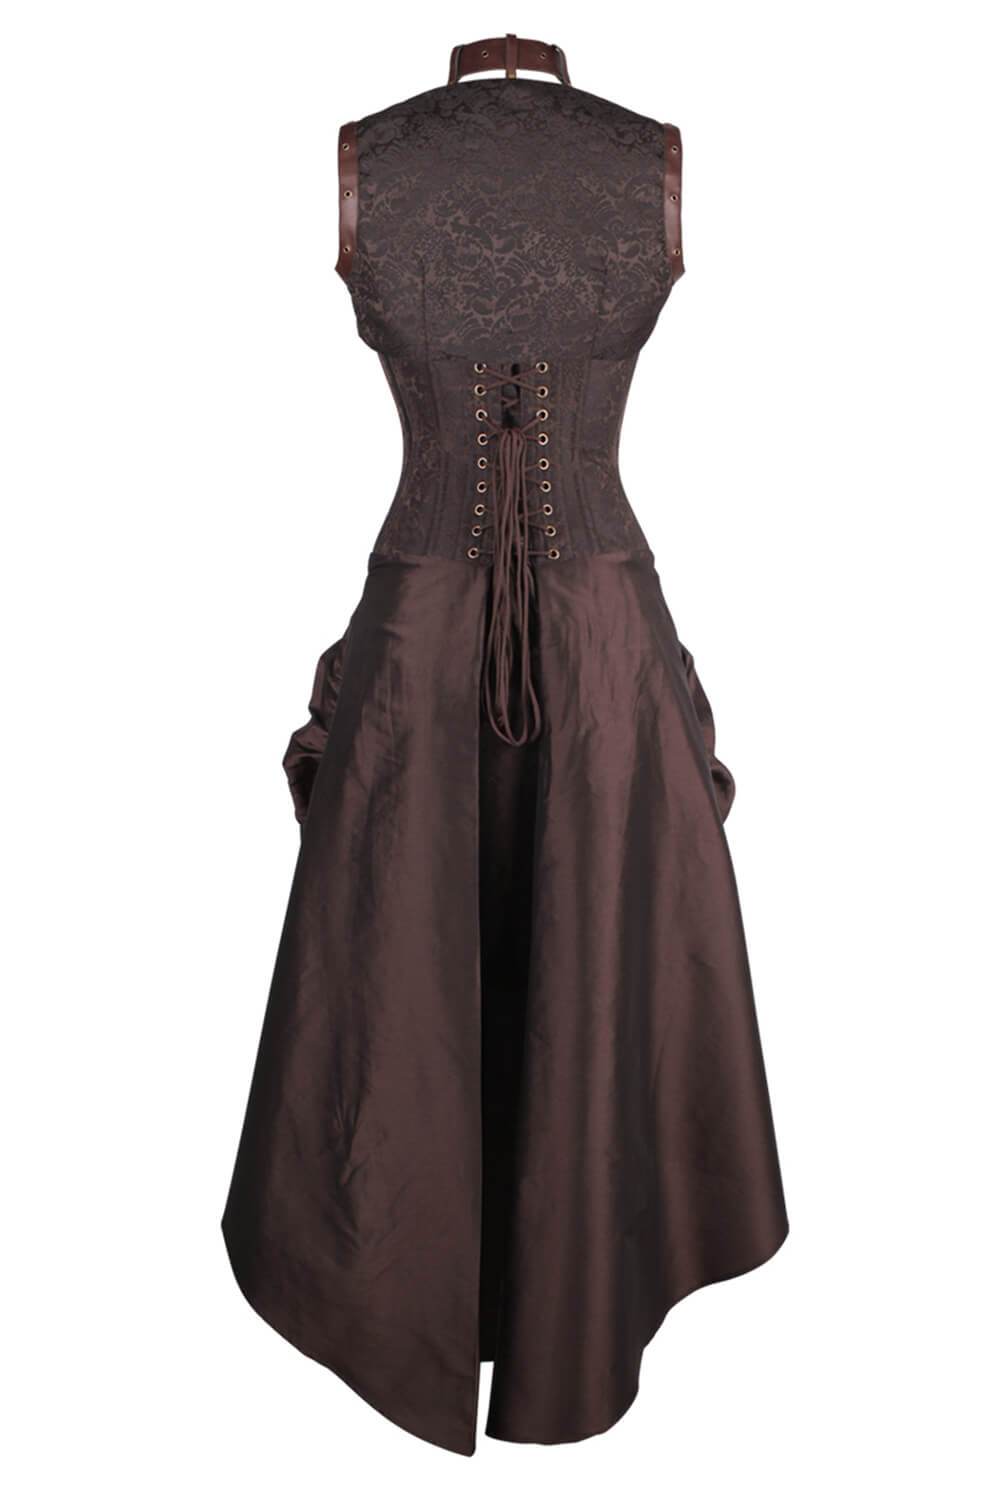 Buckled and Bustled Overbust Corset Dress – Violet Vixen